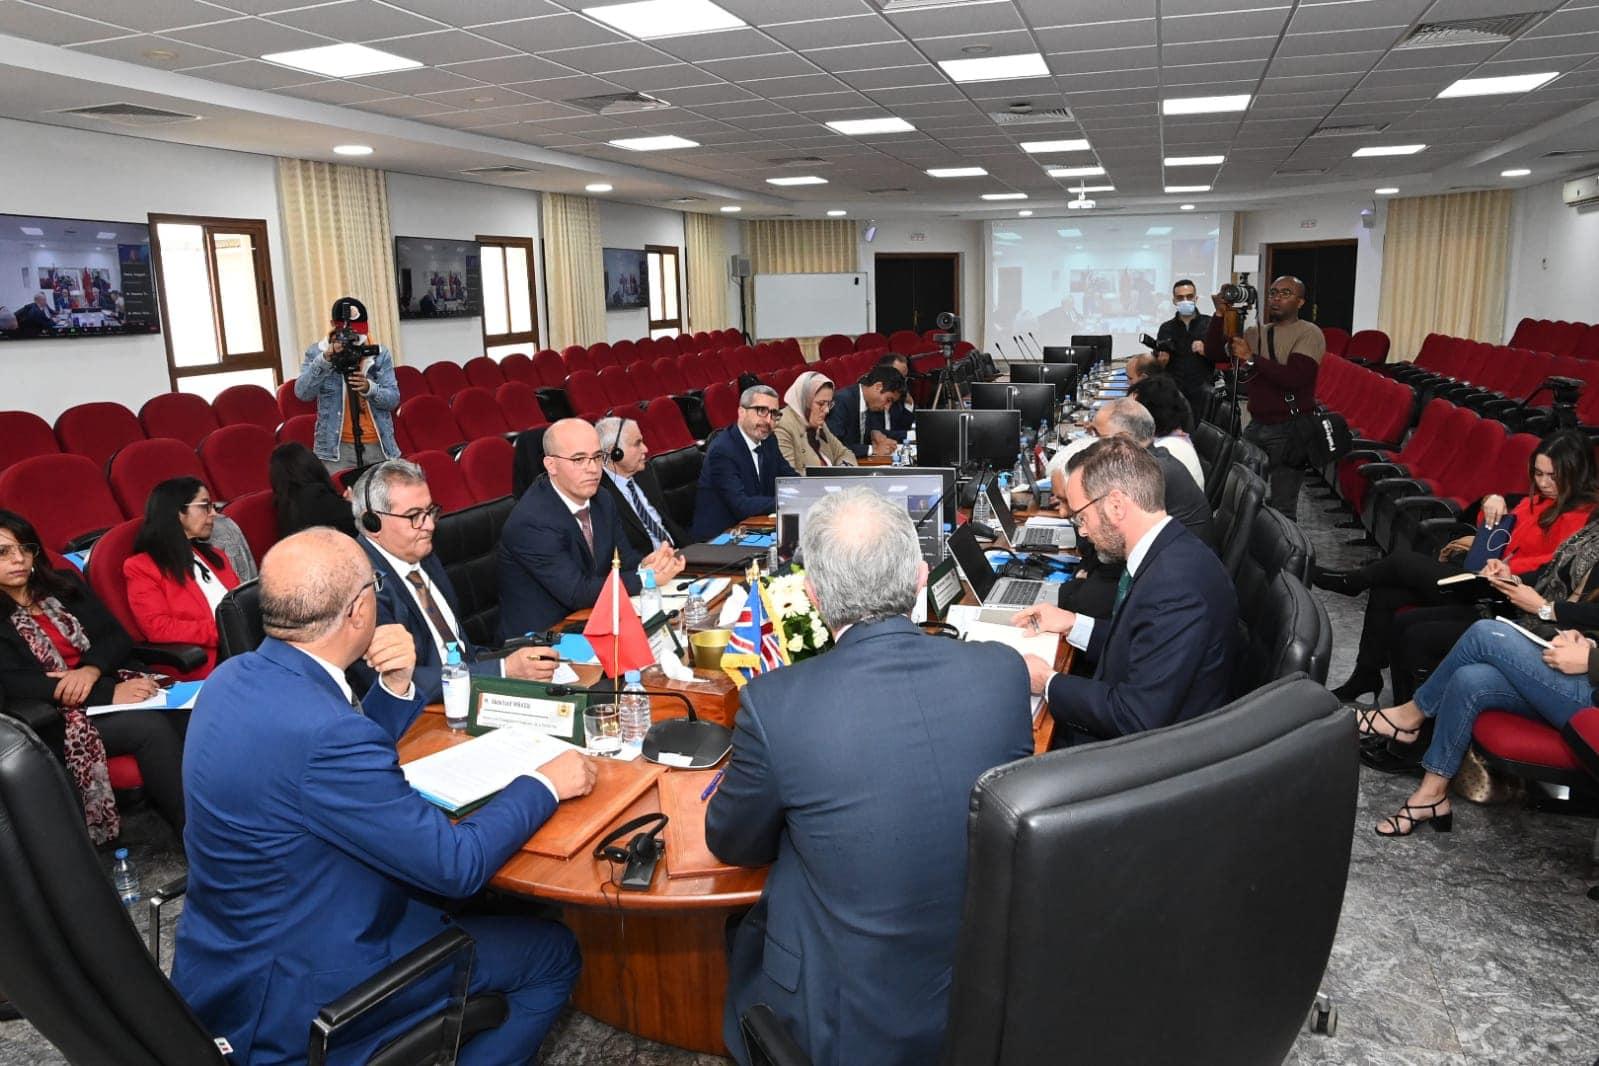 4ème réunion de la Commission de l'enseignement supérieur Maroc - Royaume-Uni